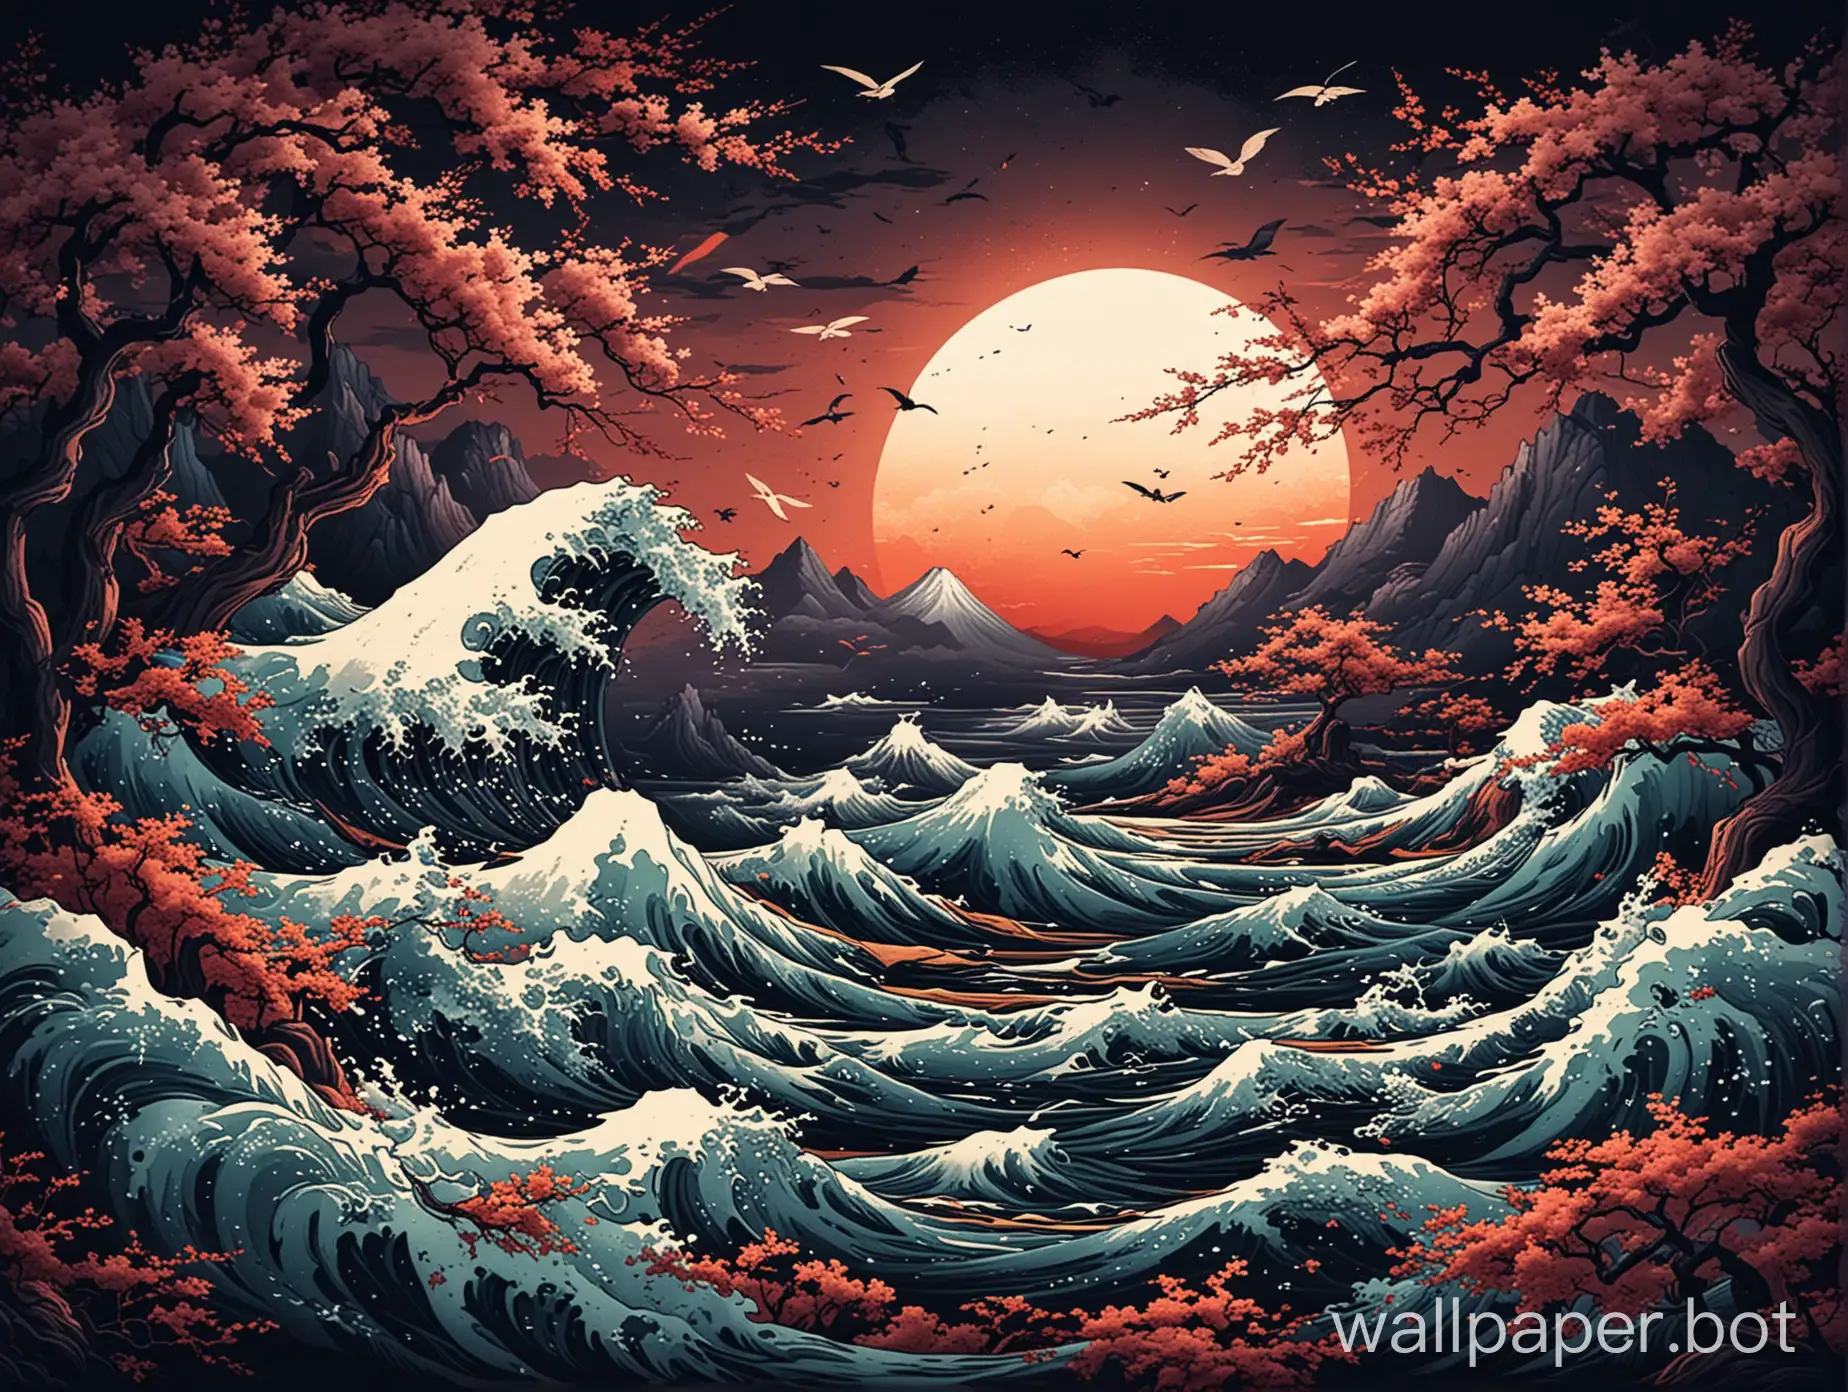 dark nature wallpaper based on kanagawa colors